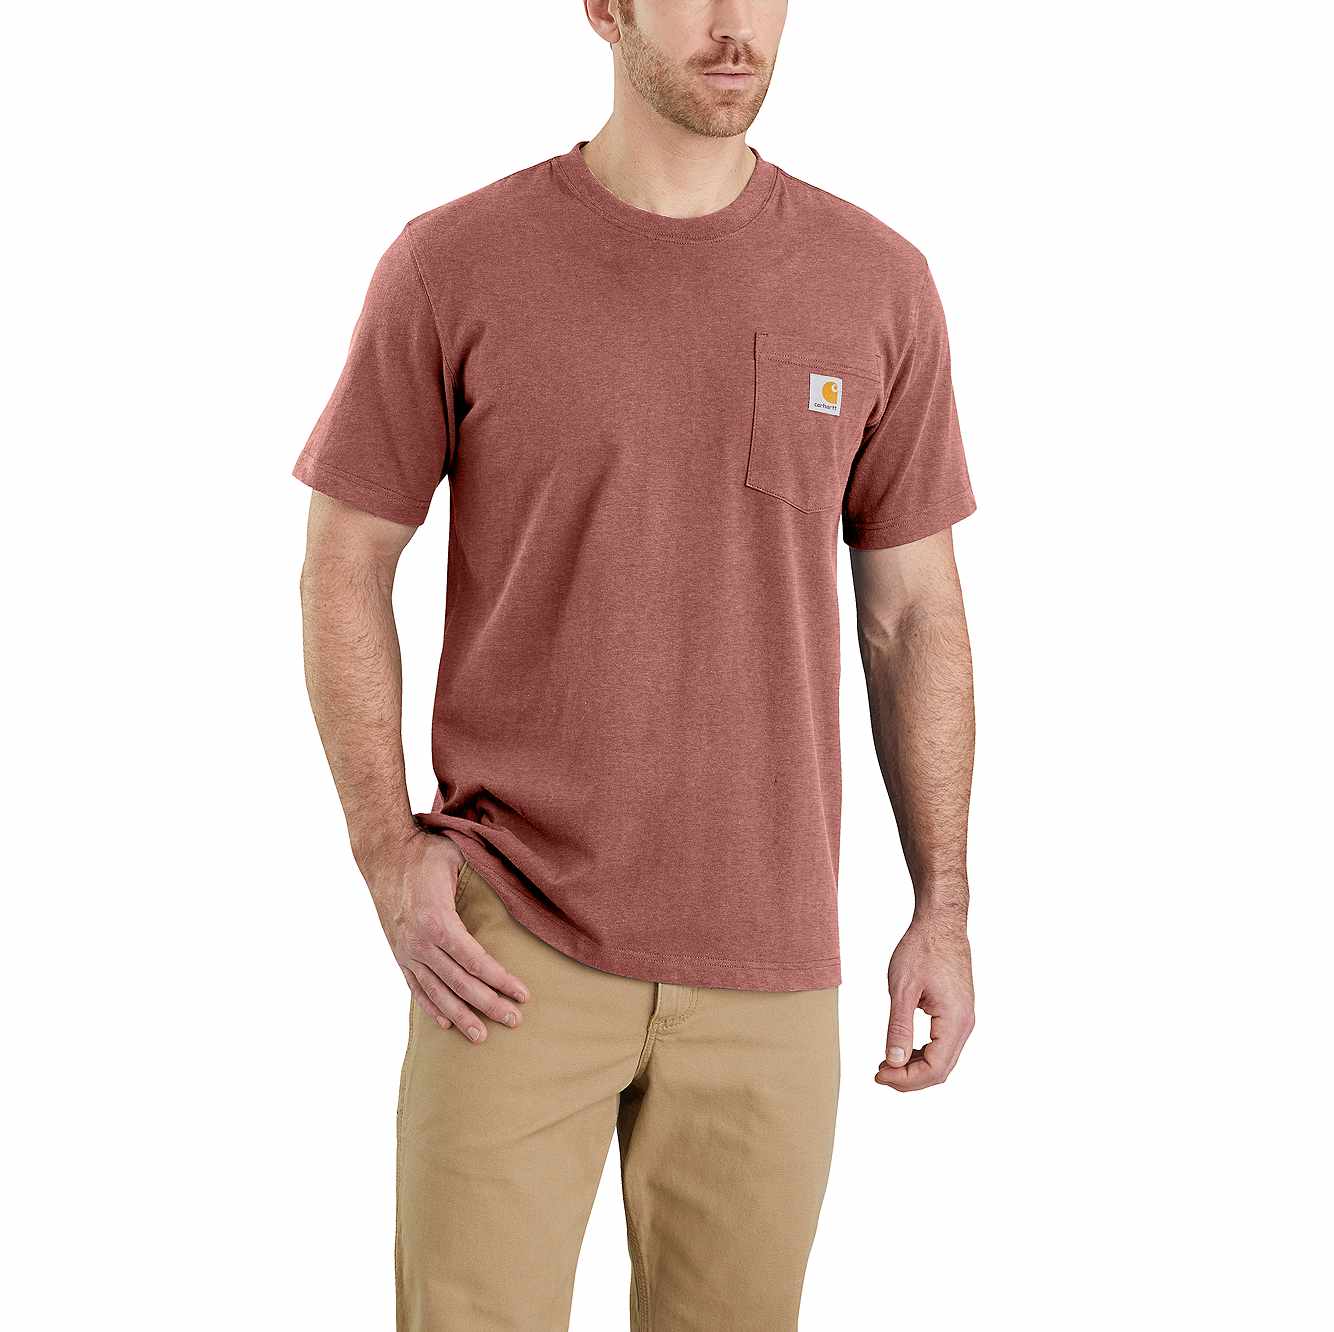 Carhartt WorkWear K87 Mens Pocket Basic T-shirt Heavyweight Jersey Knit Top 